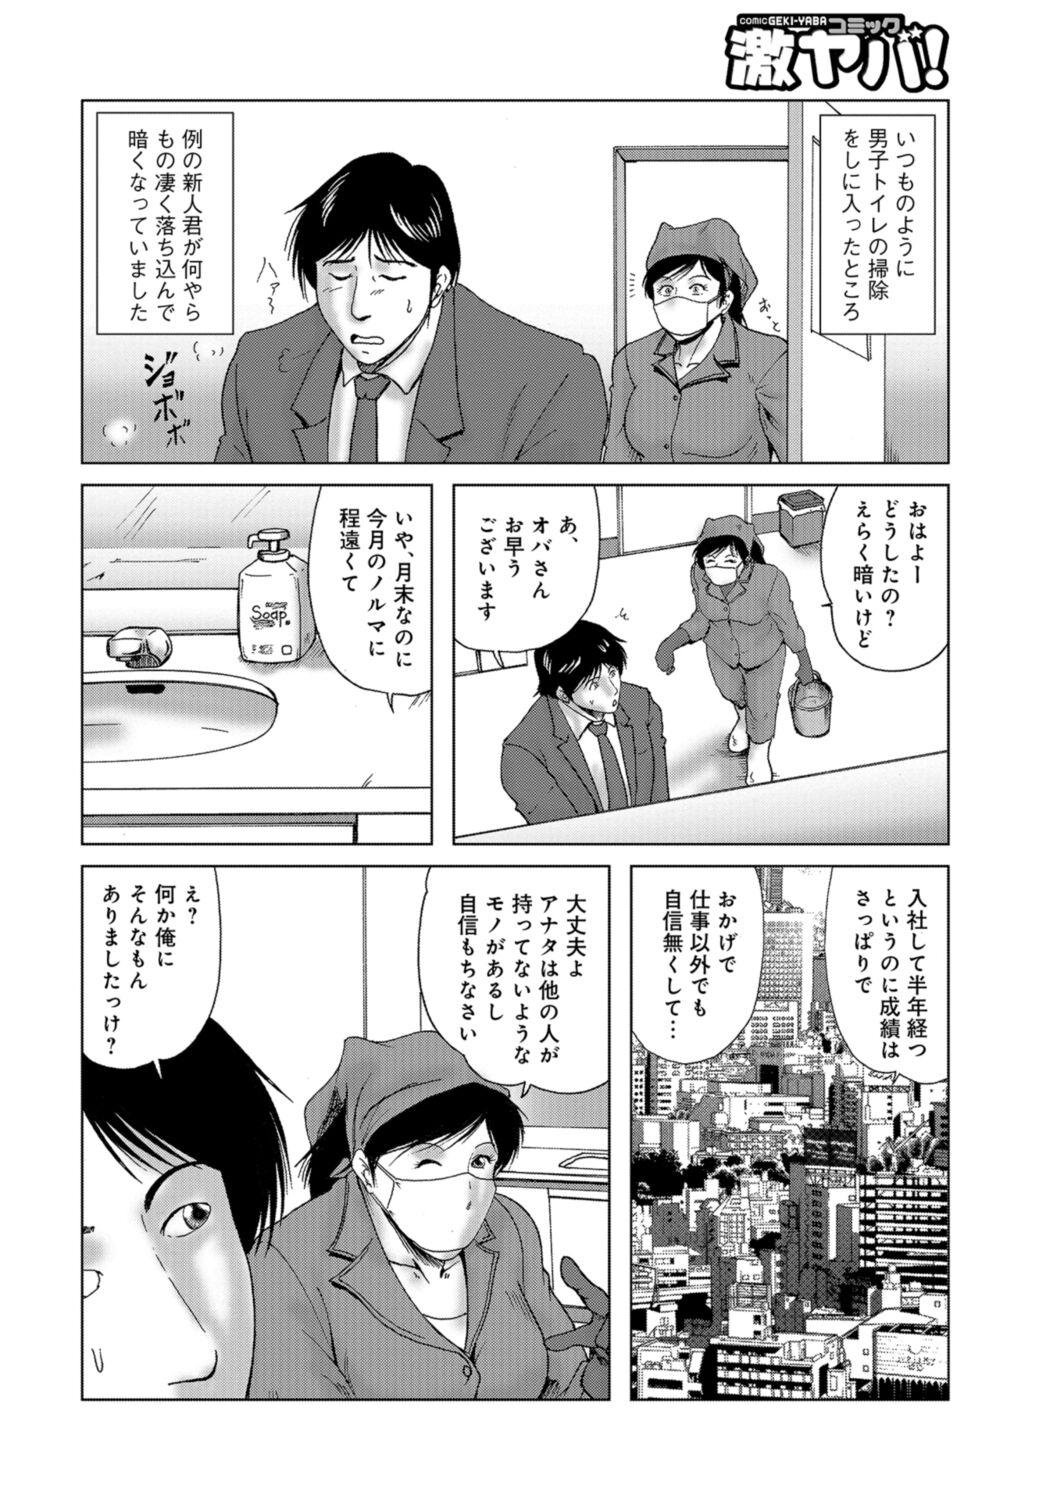 Buttplug Misoji Uwakiduma 01 Vadia - Page 8